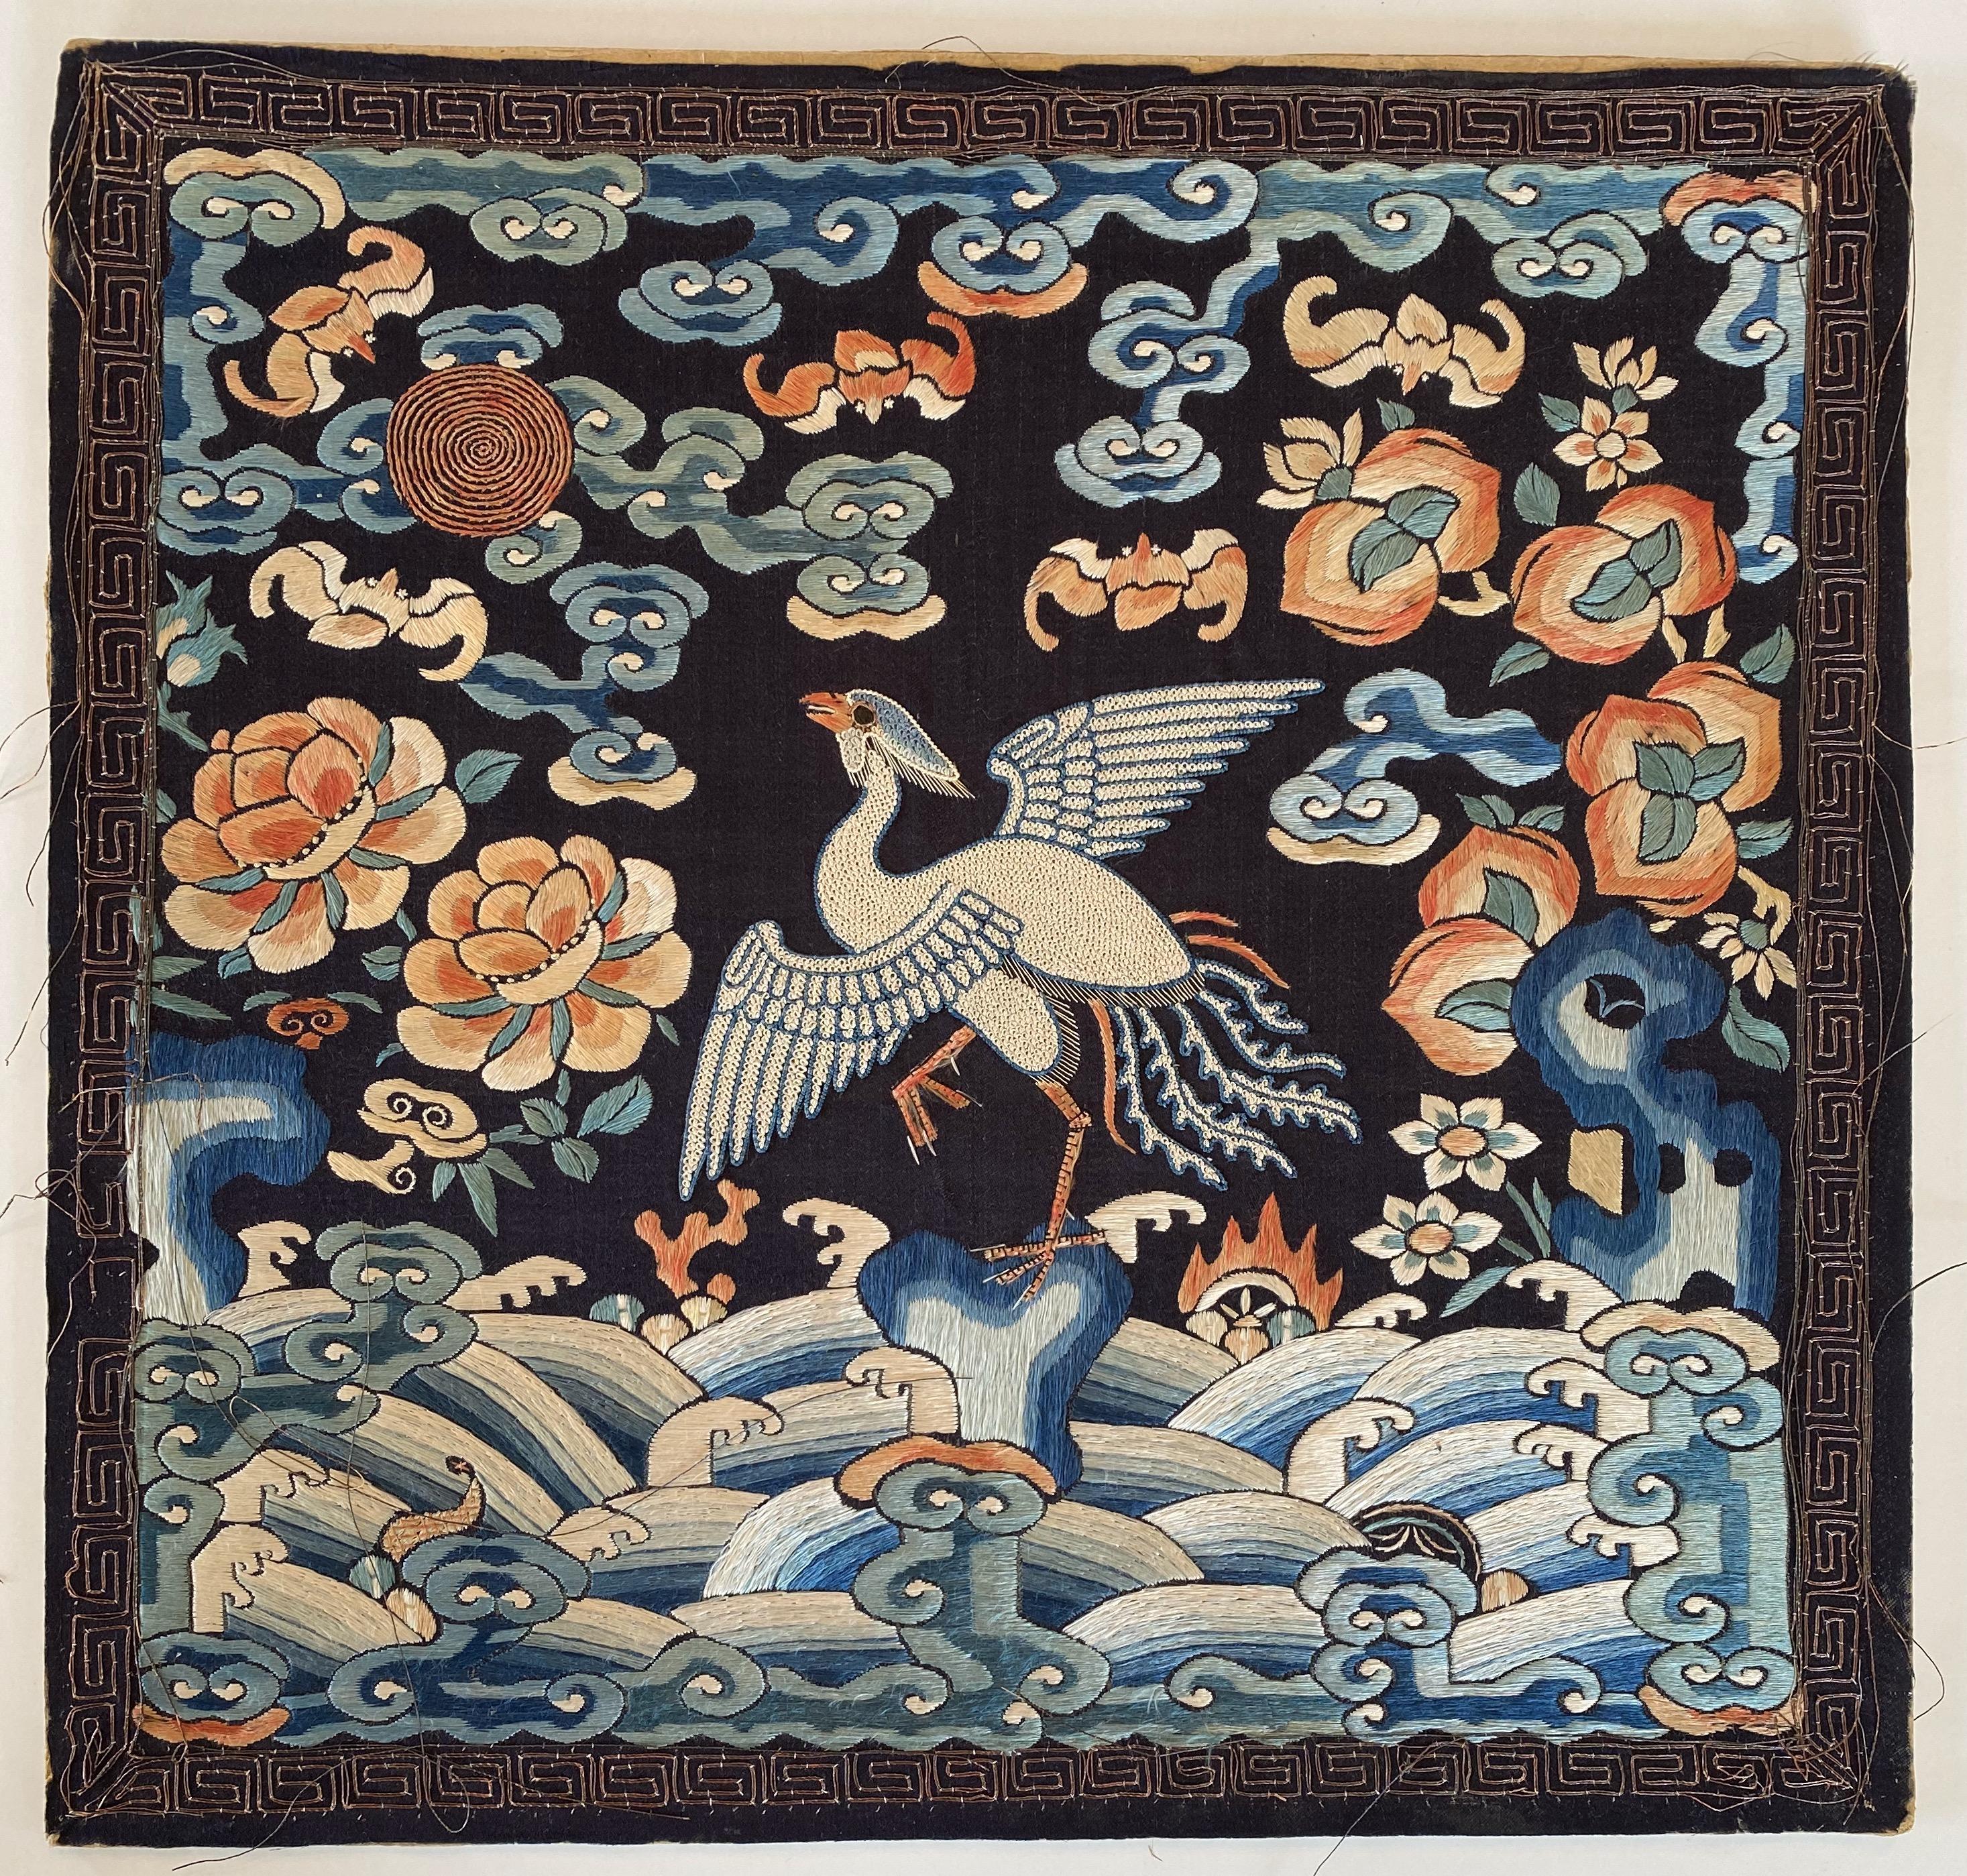 Insigne de grade en broderie de soie de la dynastie Qing avec un faisan argenté.

Cette broderie aux couleurs vives représente un faisan blanc sur un fond bleu foncé. L'oiseau est représenté les ailes déployées, planant au-dessus de la mer. Il fait